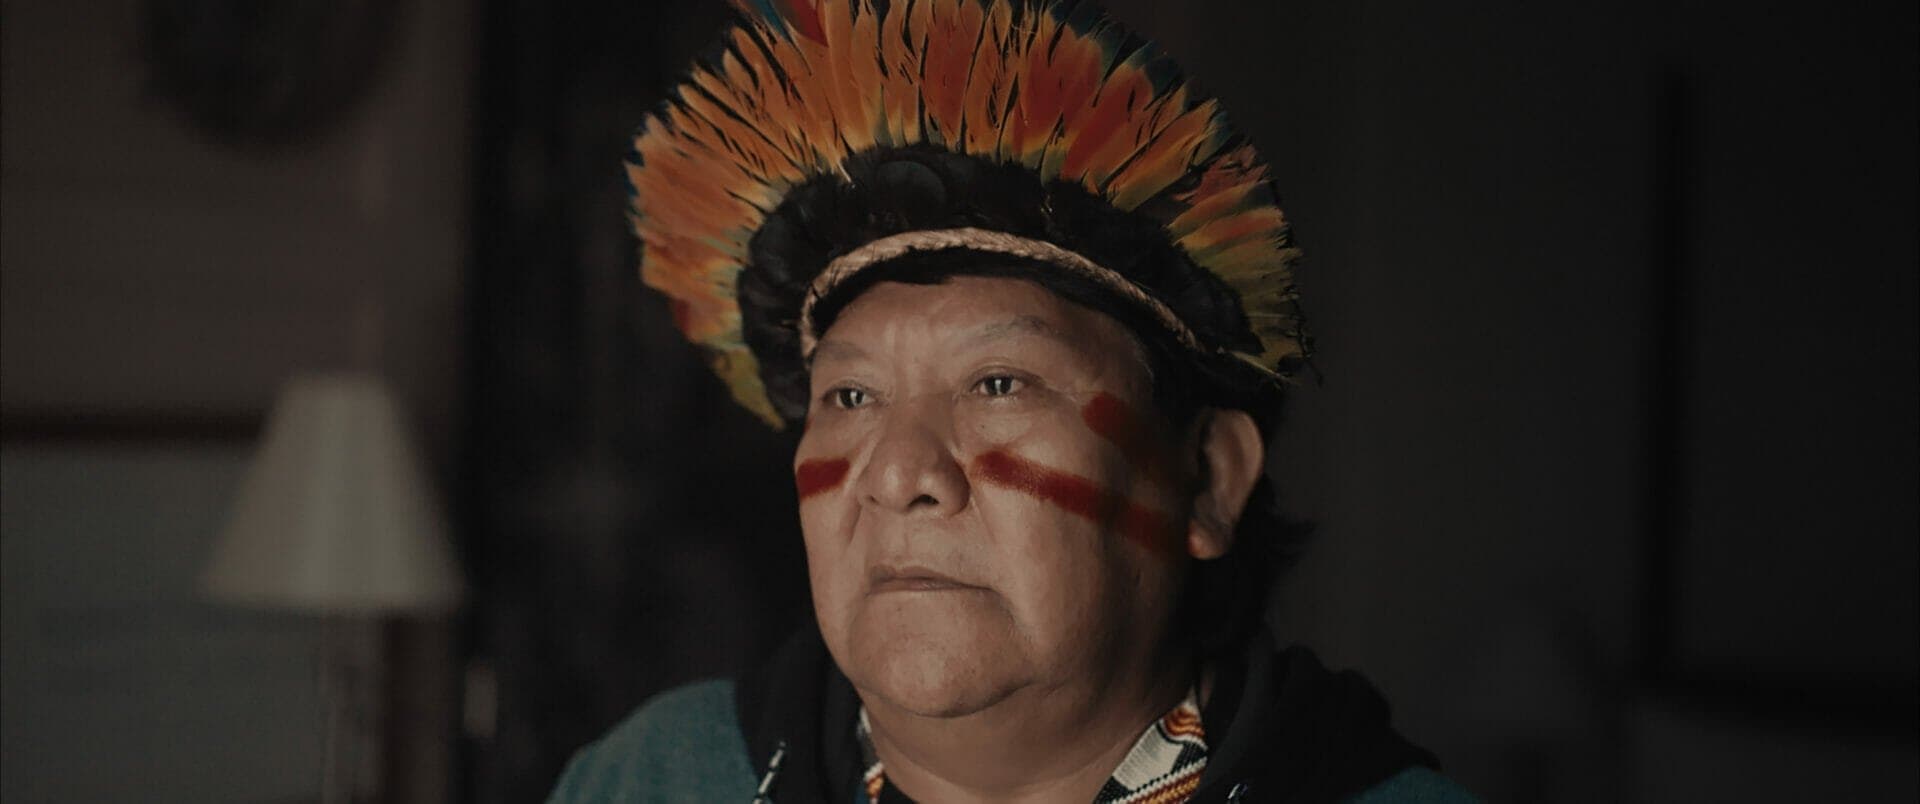 Itaú Cultural Play realiza a pré-estreia nacional de A Última Floresta, filme do diretor Luiz Bolognesi roteirizado com Davi Kopenawa Yanomami